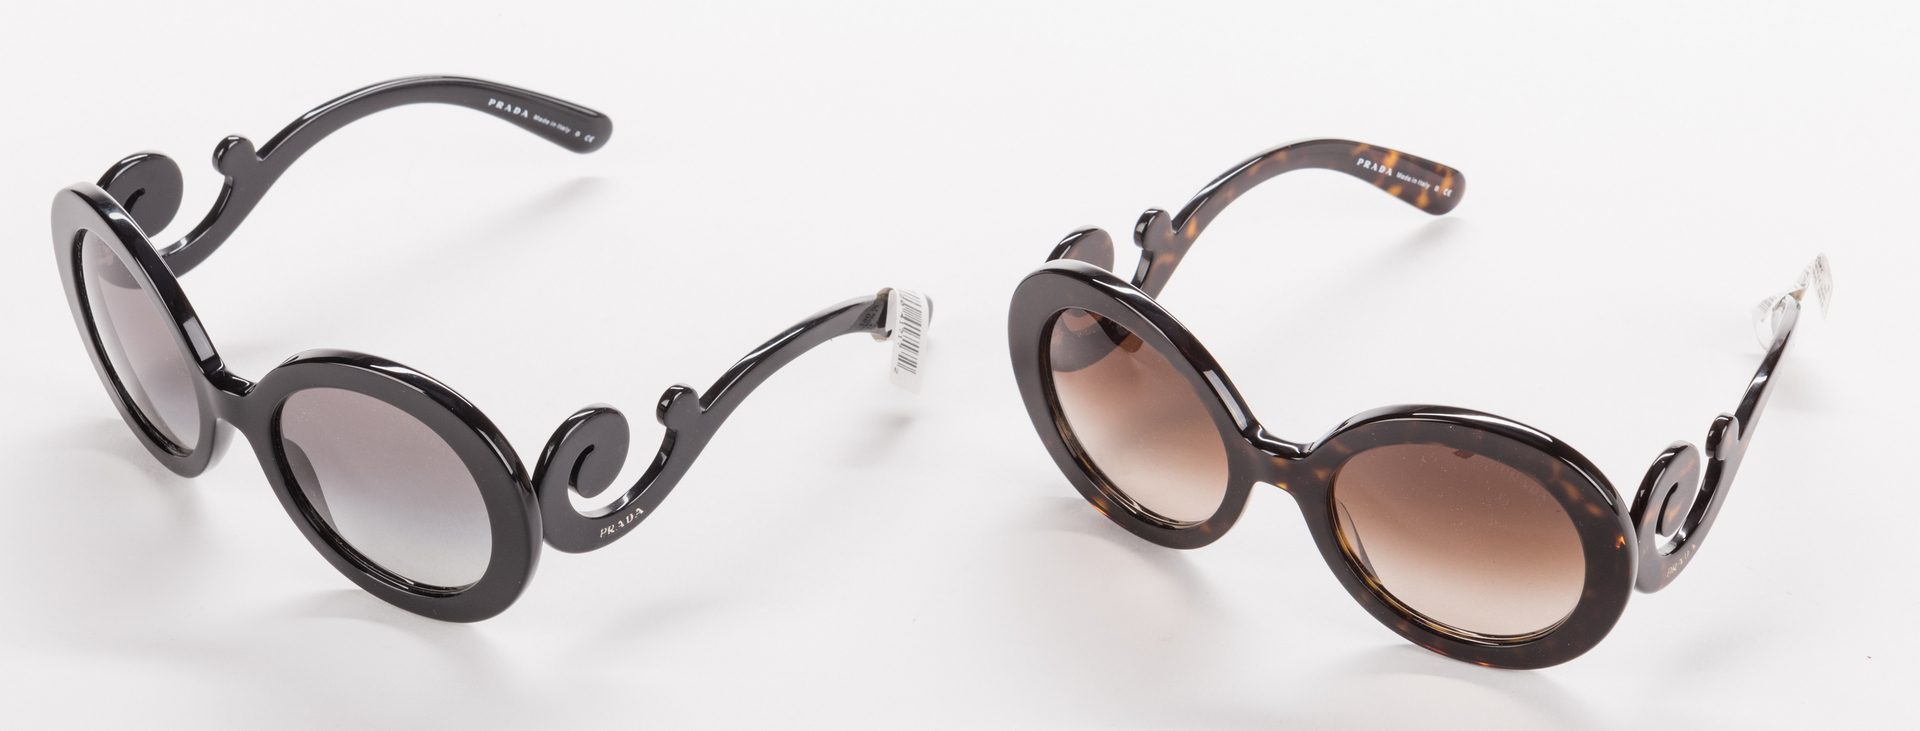 Lot 837: 5 Pairs of Designer Sunglasses, inc. Prada, Chanel